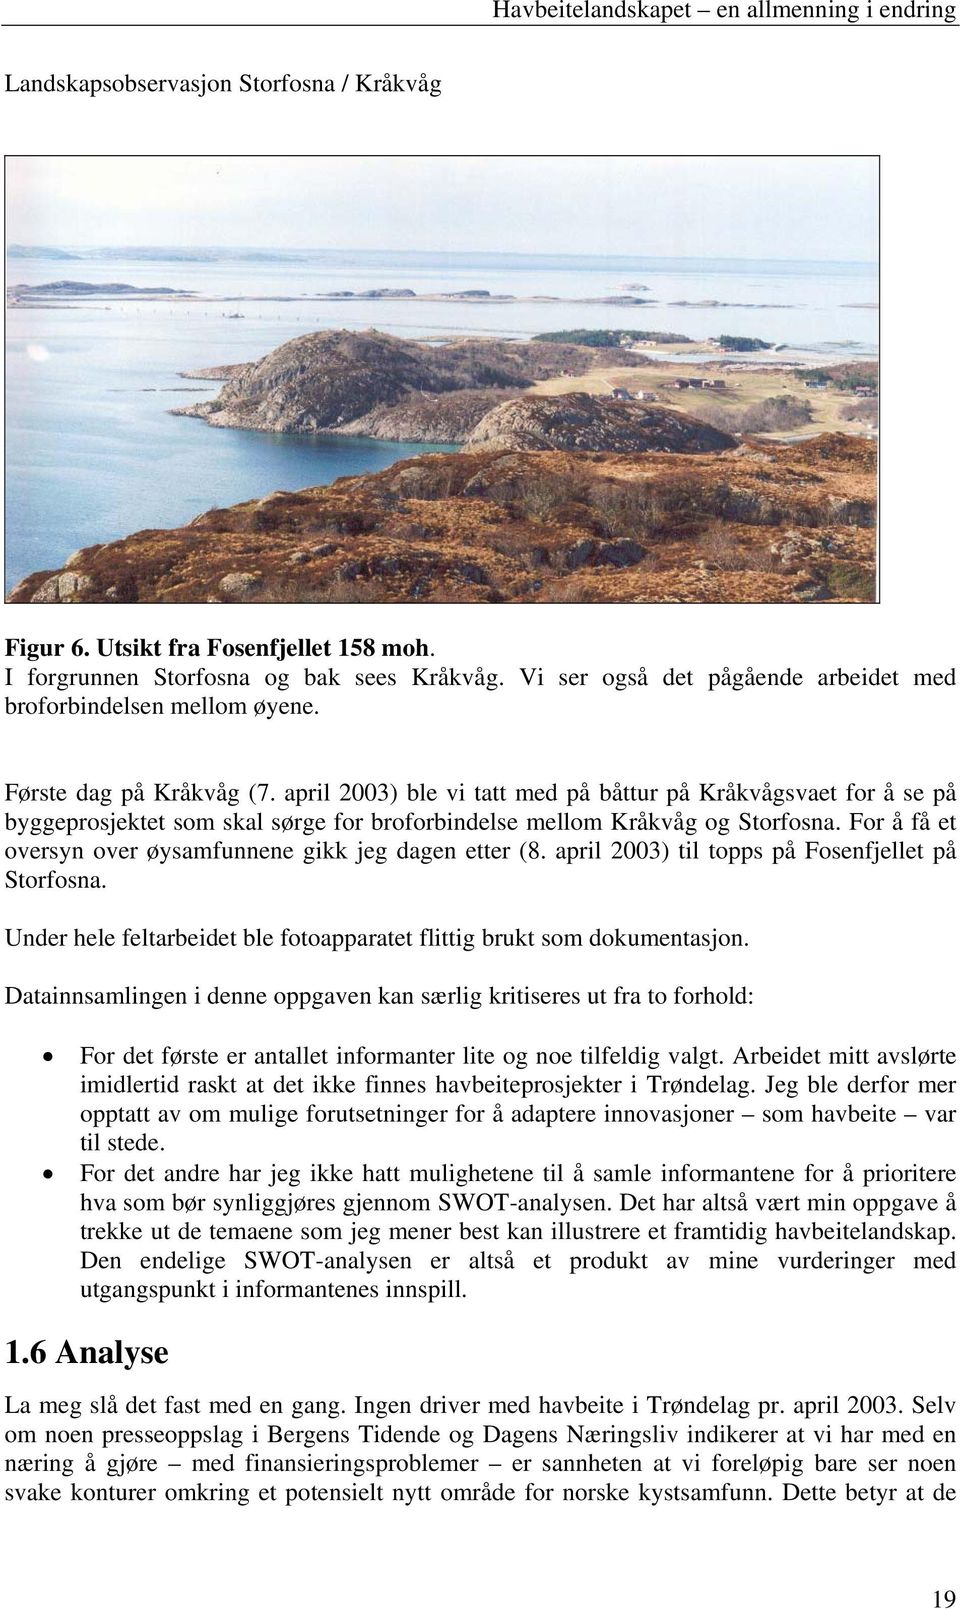 april 2003) ble vi tatt med på båttur på Kråkvågsvaet for å se på byggeprosjektet som skal sørge for broforbindelse mellom Kråkvåg og Storfosna.